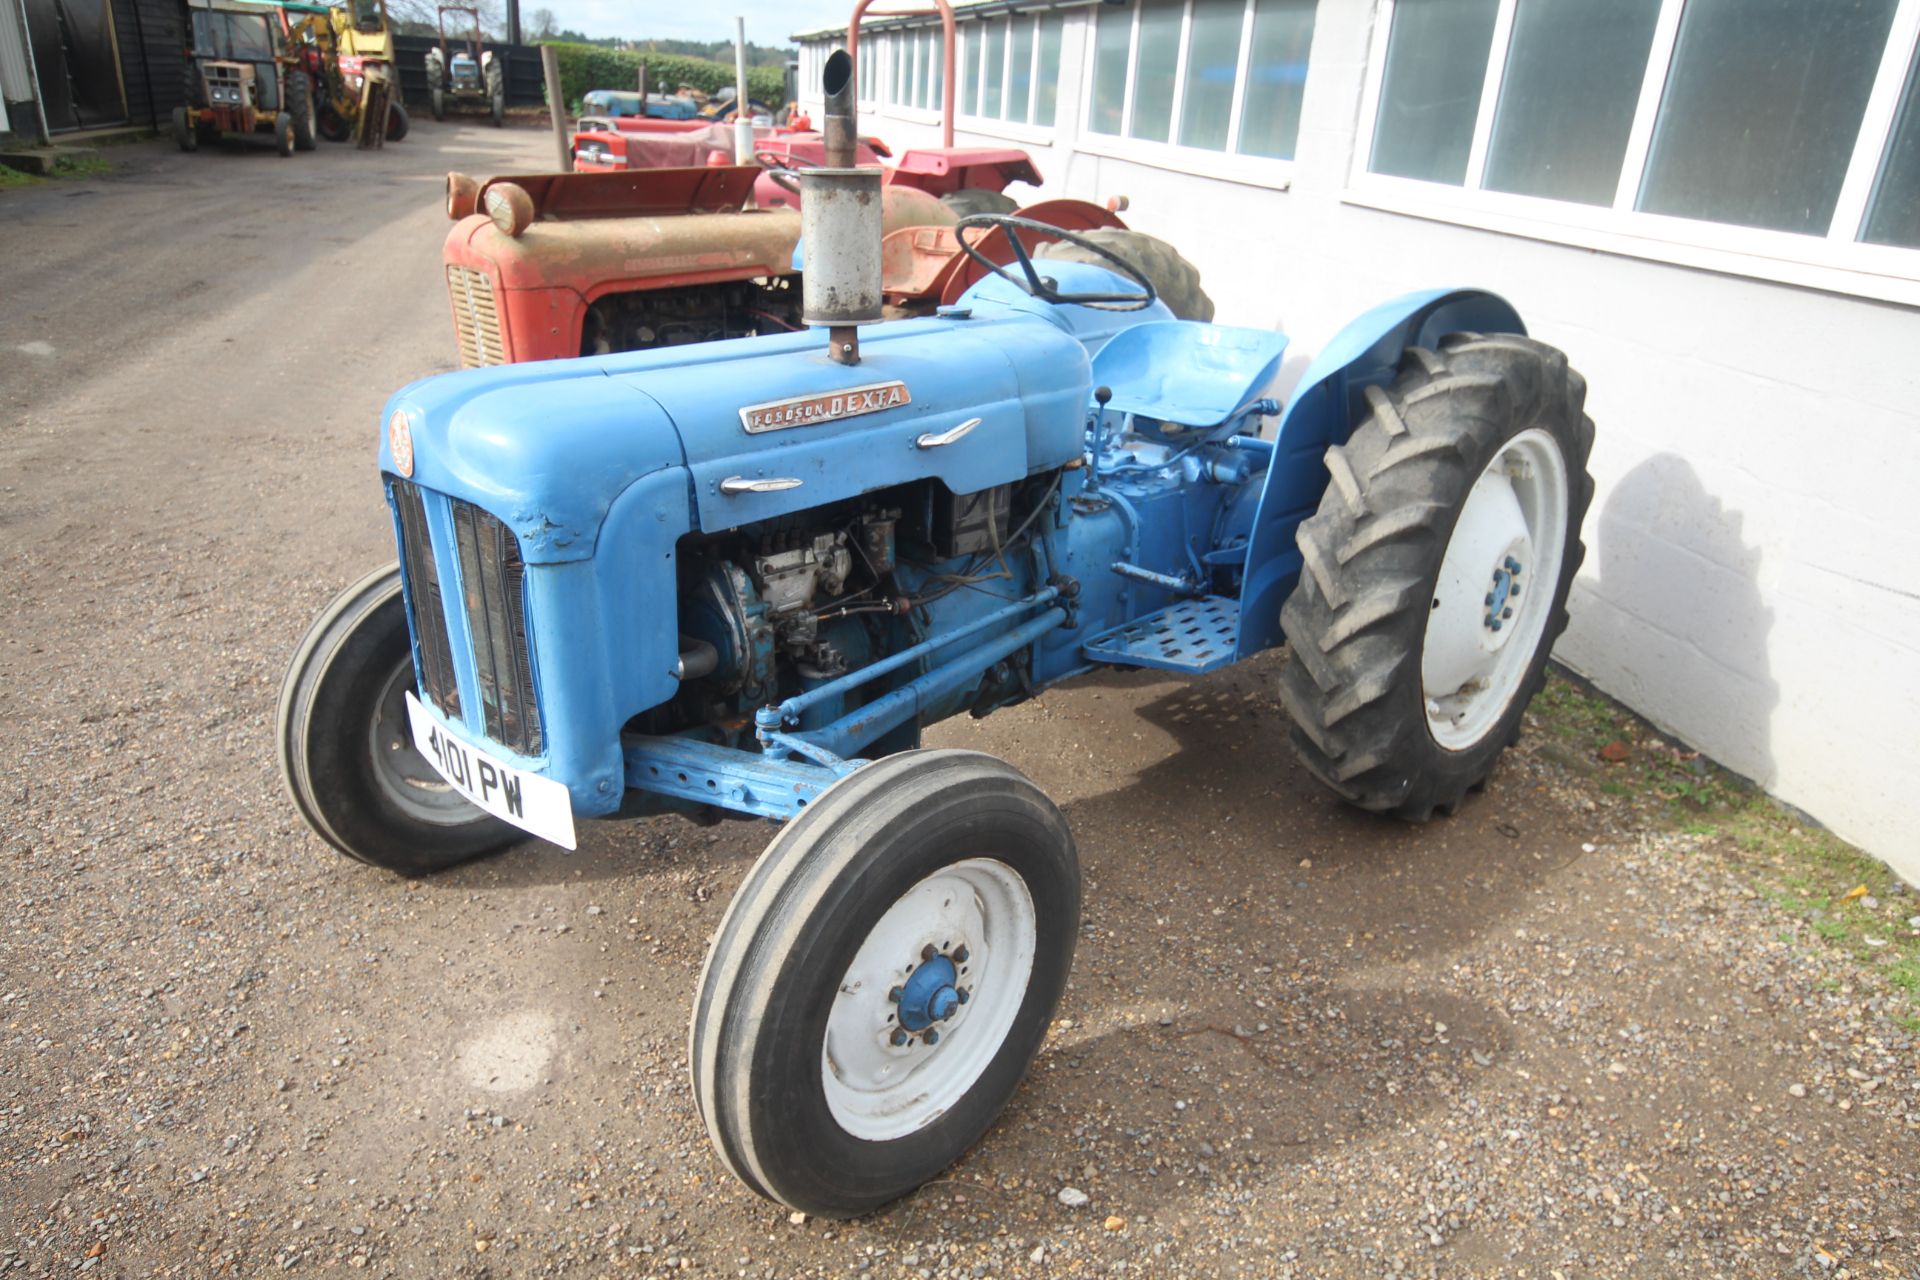 Fordson Dexta 2WD tractor. Registration 4101 PW. Date of first registration 02/02/1962. Key, V5